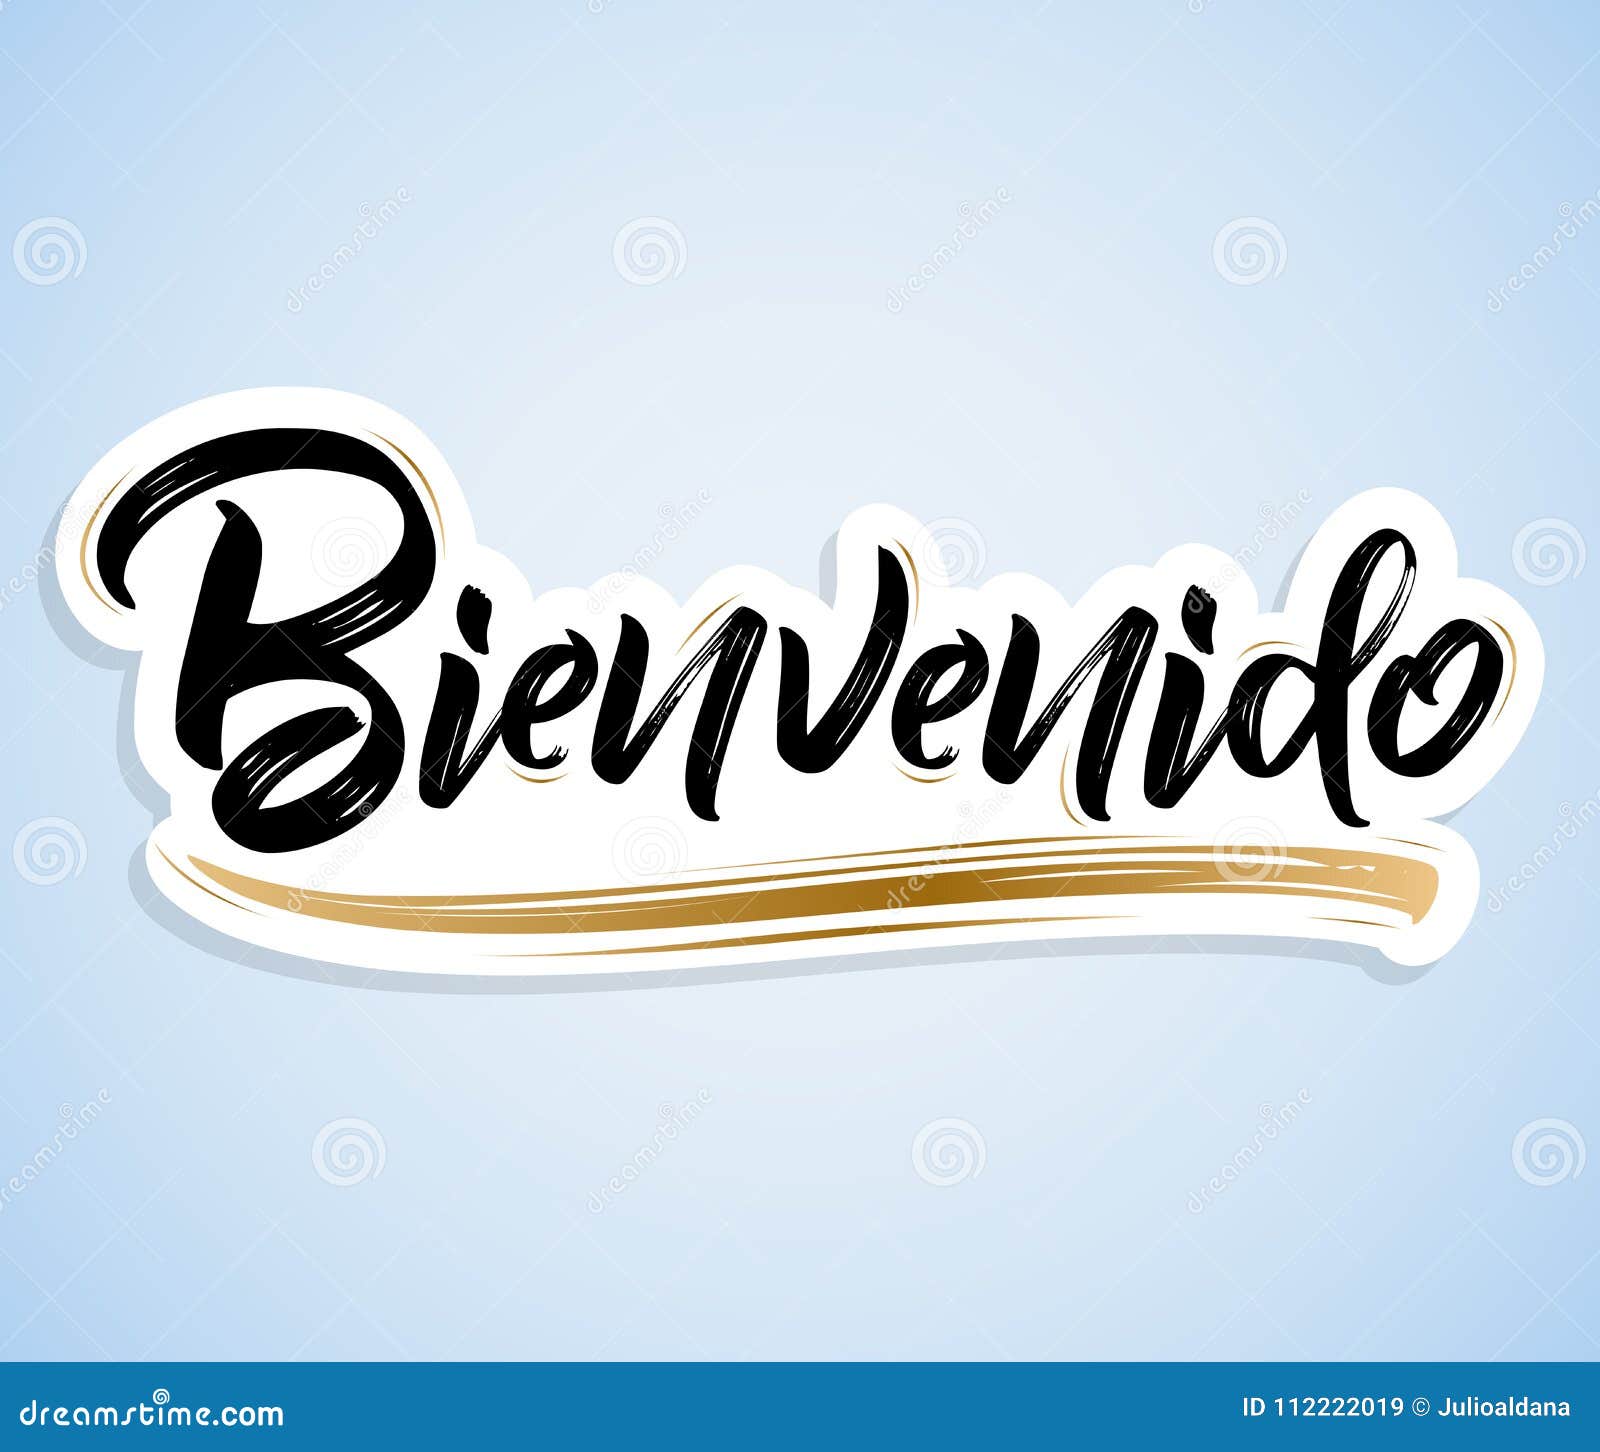 Download Bienvenido, Welcome Spanish Text Stock Vector ...